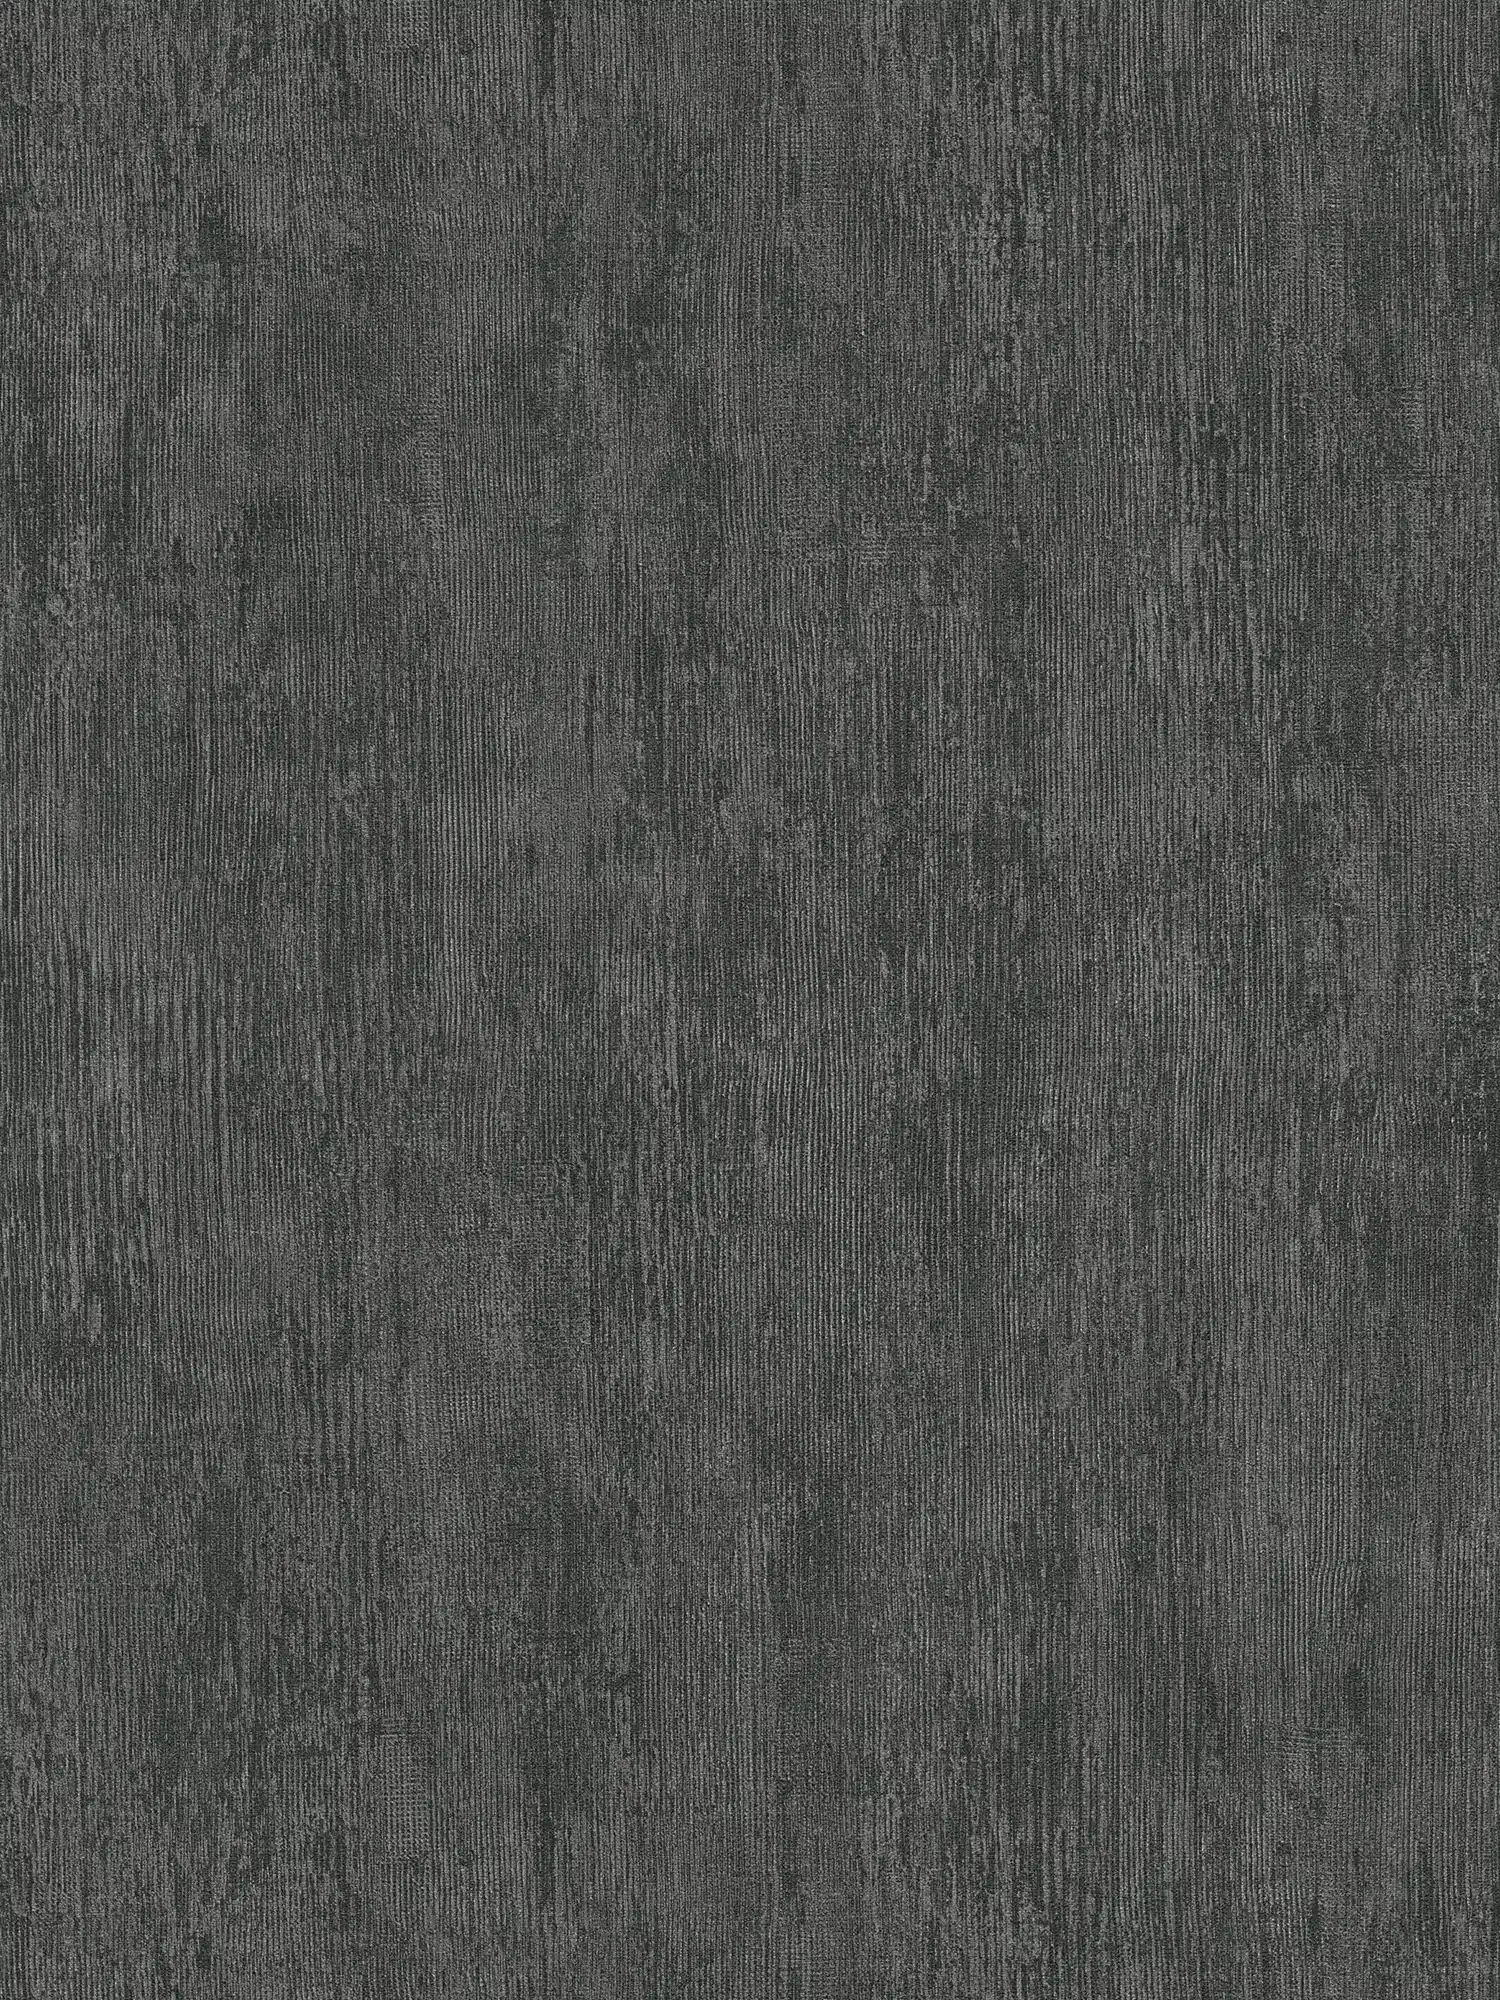 Metalen behangpapier met rustiek design - grijs, zwart
